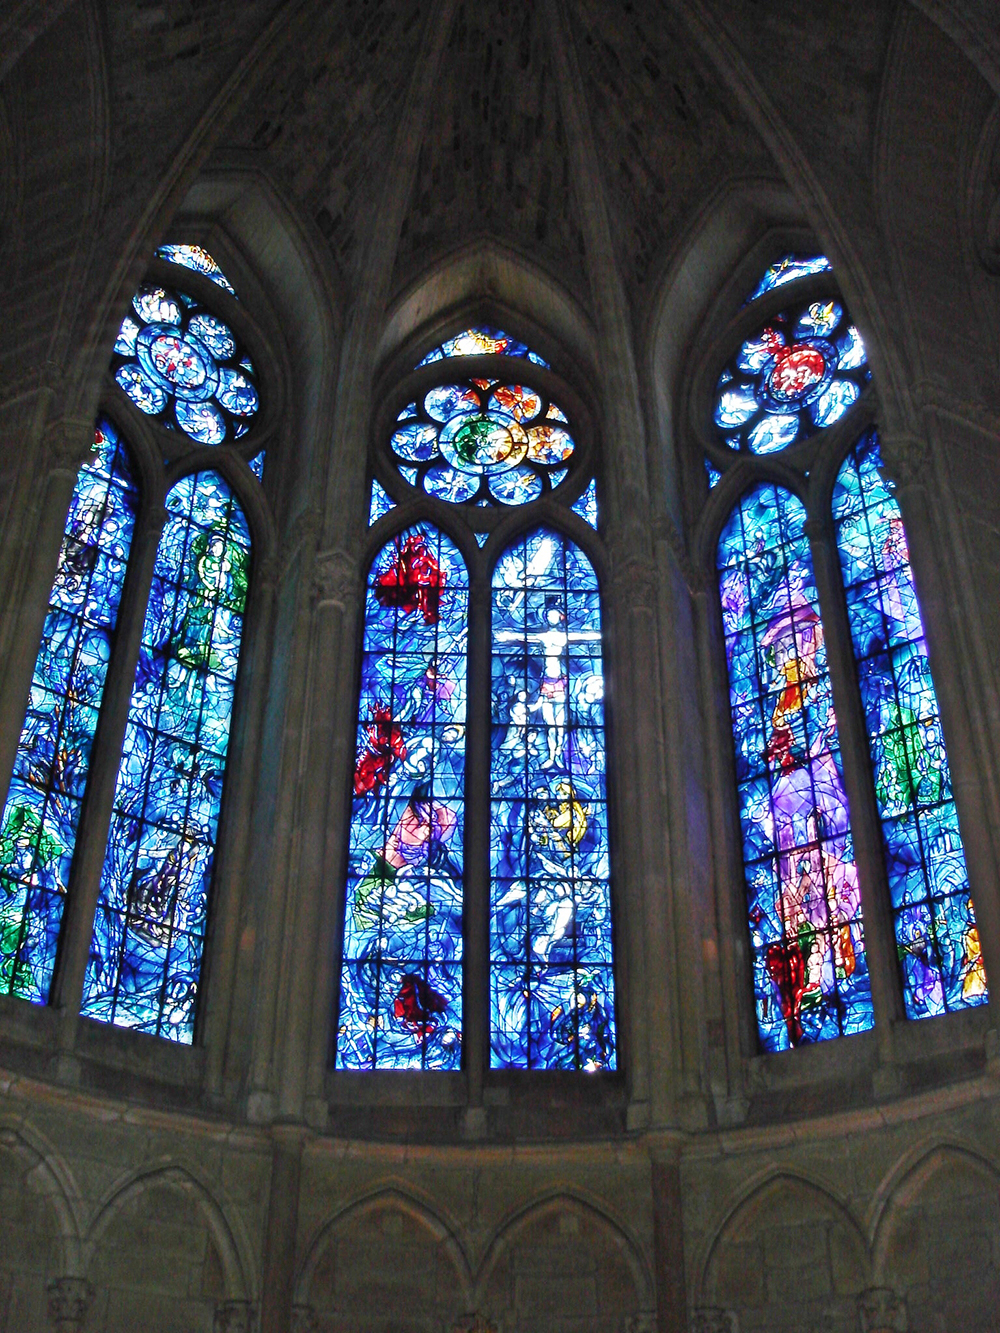 Reims-székesegyház, Reims, Franciaország<br />Egészen a 13.századig nyúlik vissza a Reims-i székesegyház a világ minden tájáról festett üvegablakainak története. Sajnos az eredeti ólomüveg panelek közül kevés maradt, de az olyan 20.századi művészek, mint Mare Chagall elkötelezettsége az ólomüveg művészet újbóli létrehozására biztosította Reims helyét a világ legcsodálatosabb ólomüveg építészetében a mai napig.<br />